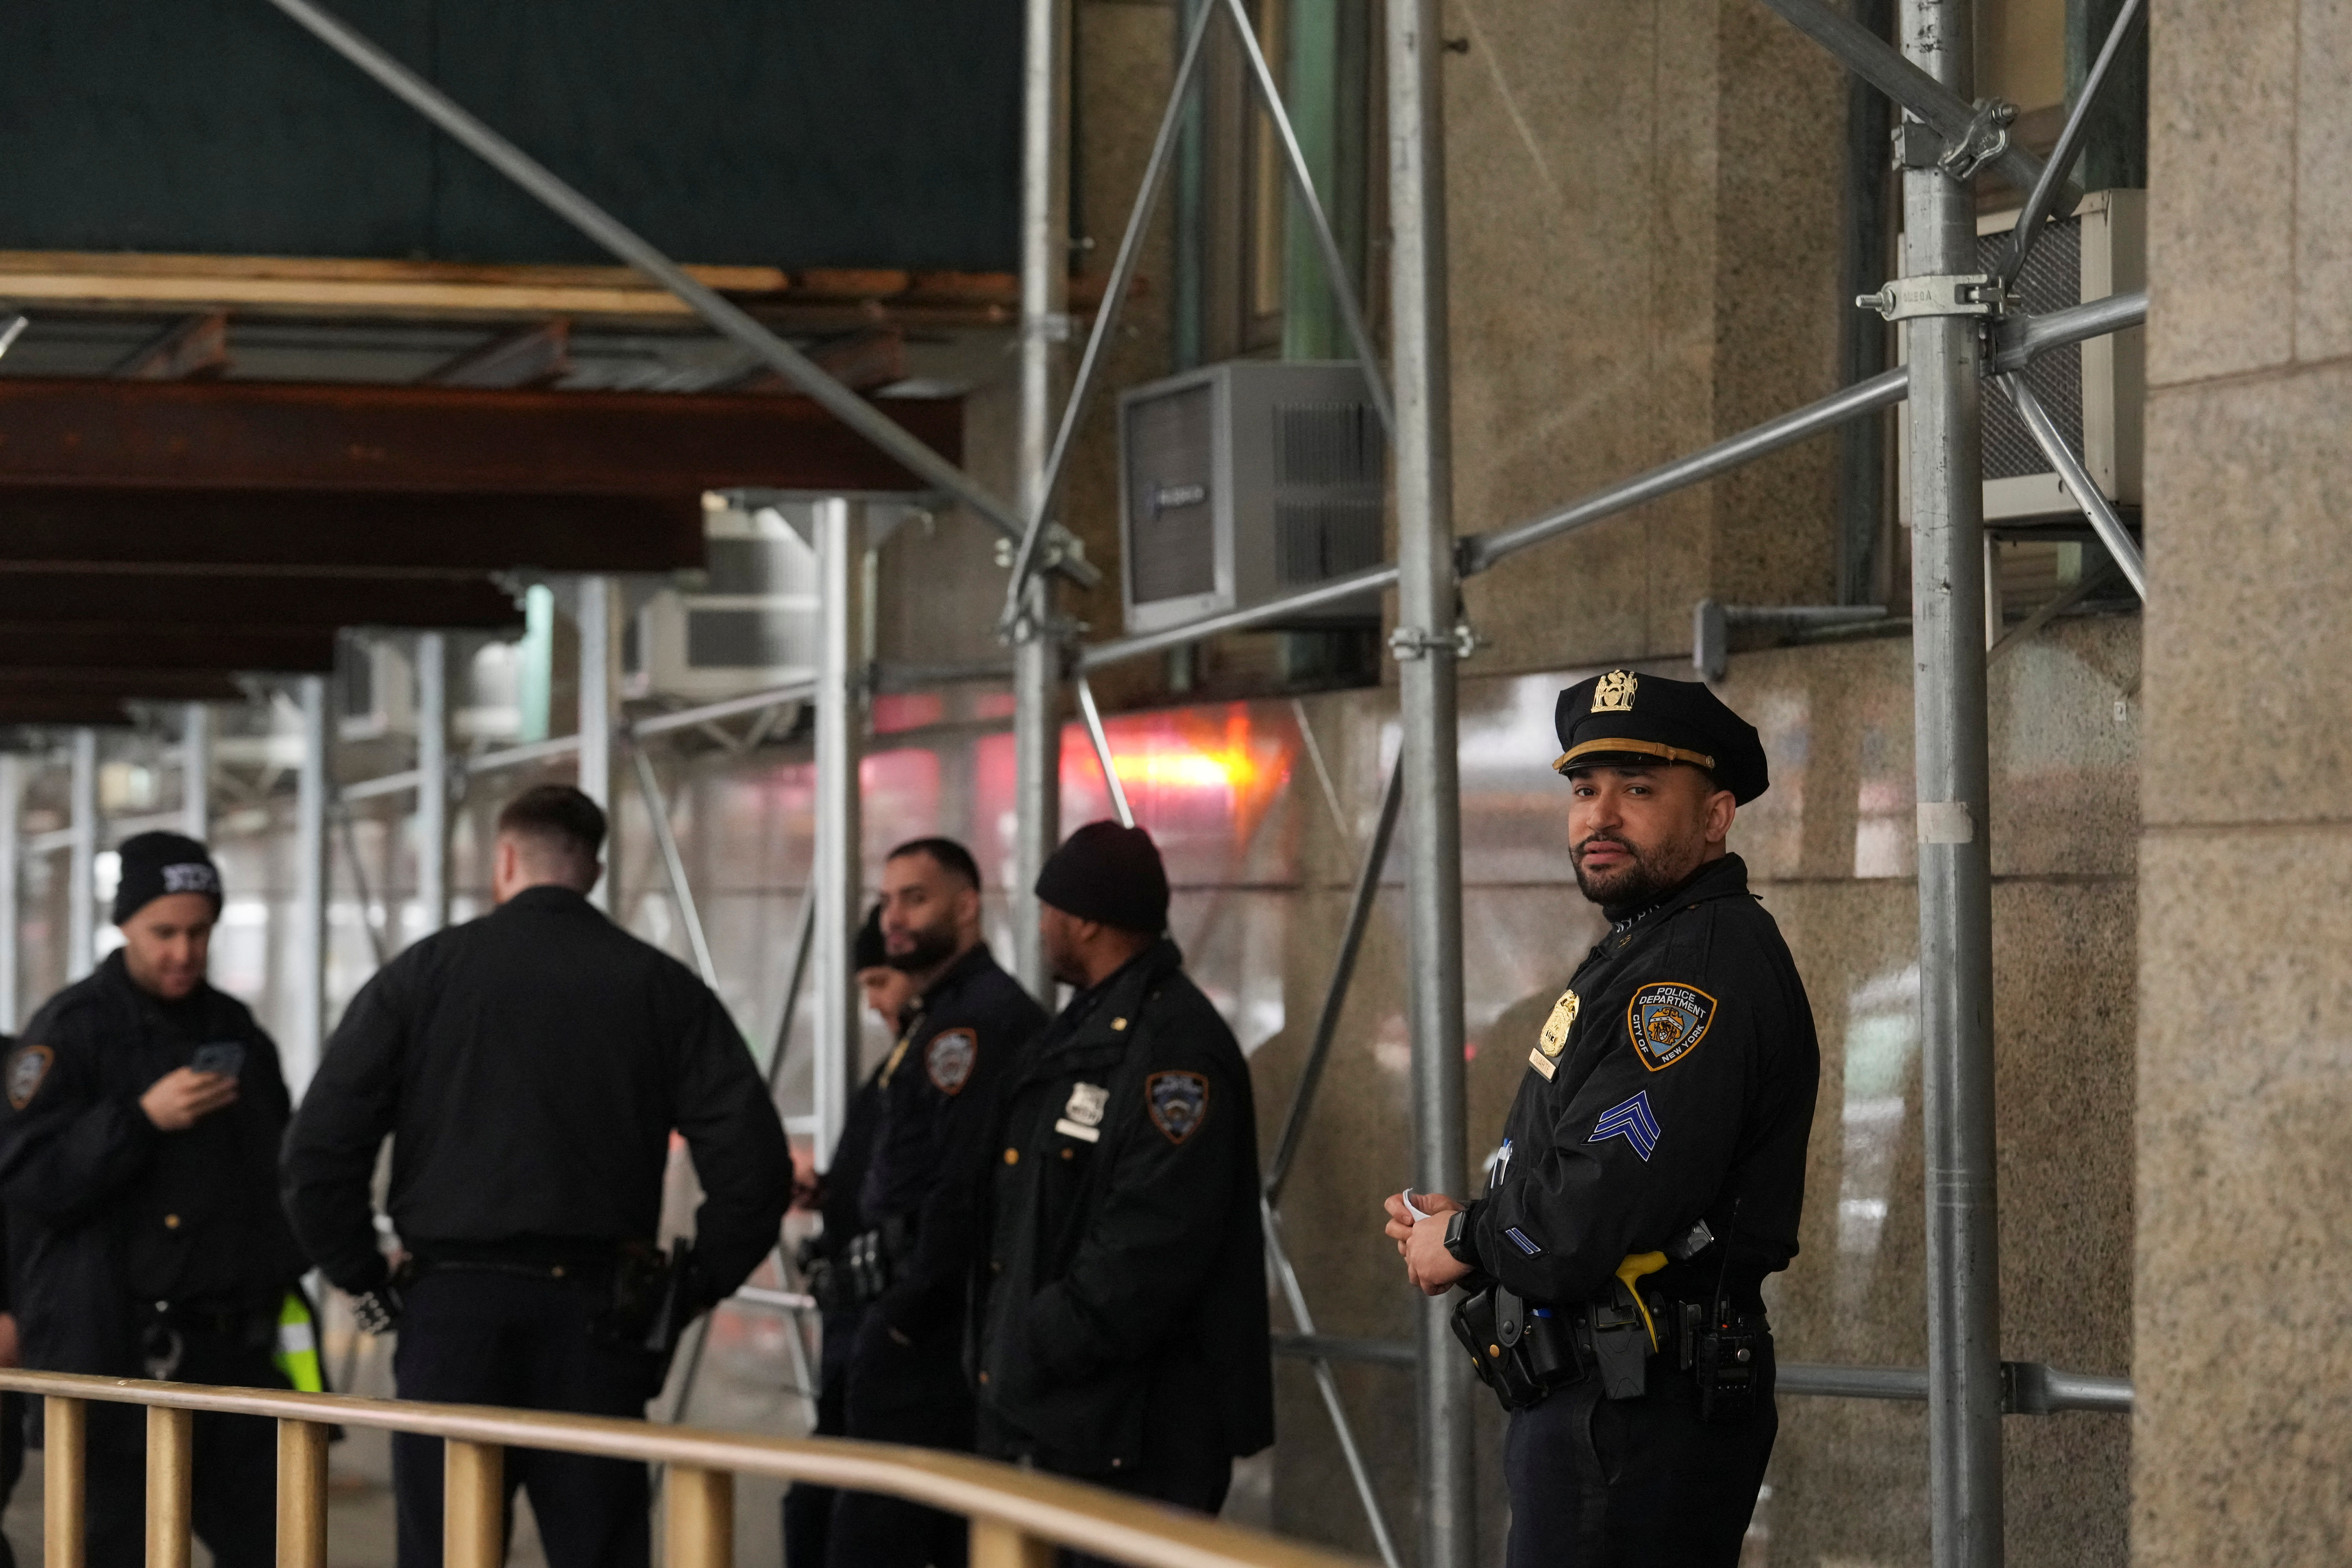 La Policía de Nueva York cree que “no hay amenazas creíbles actuales para la ciudad”. (REUTERS/Jeenah Moon)